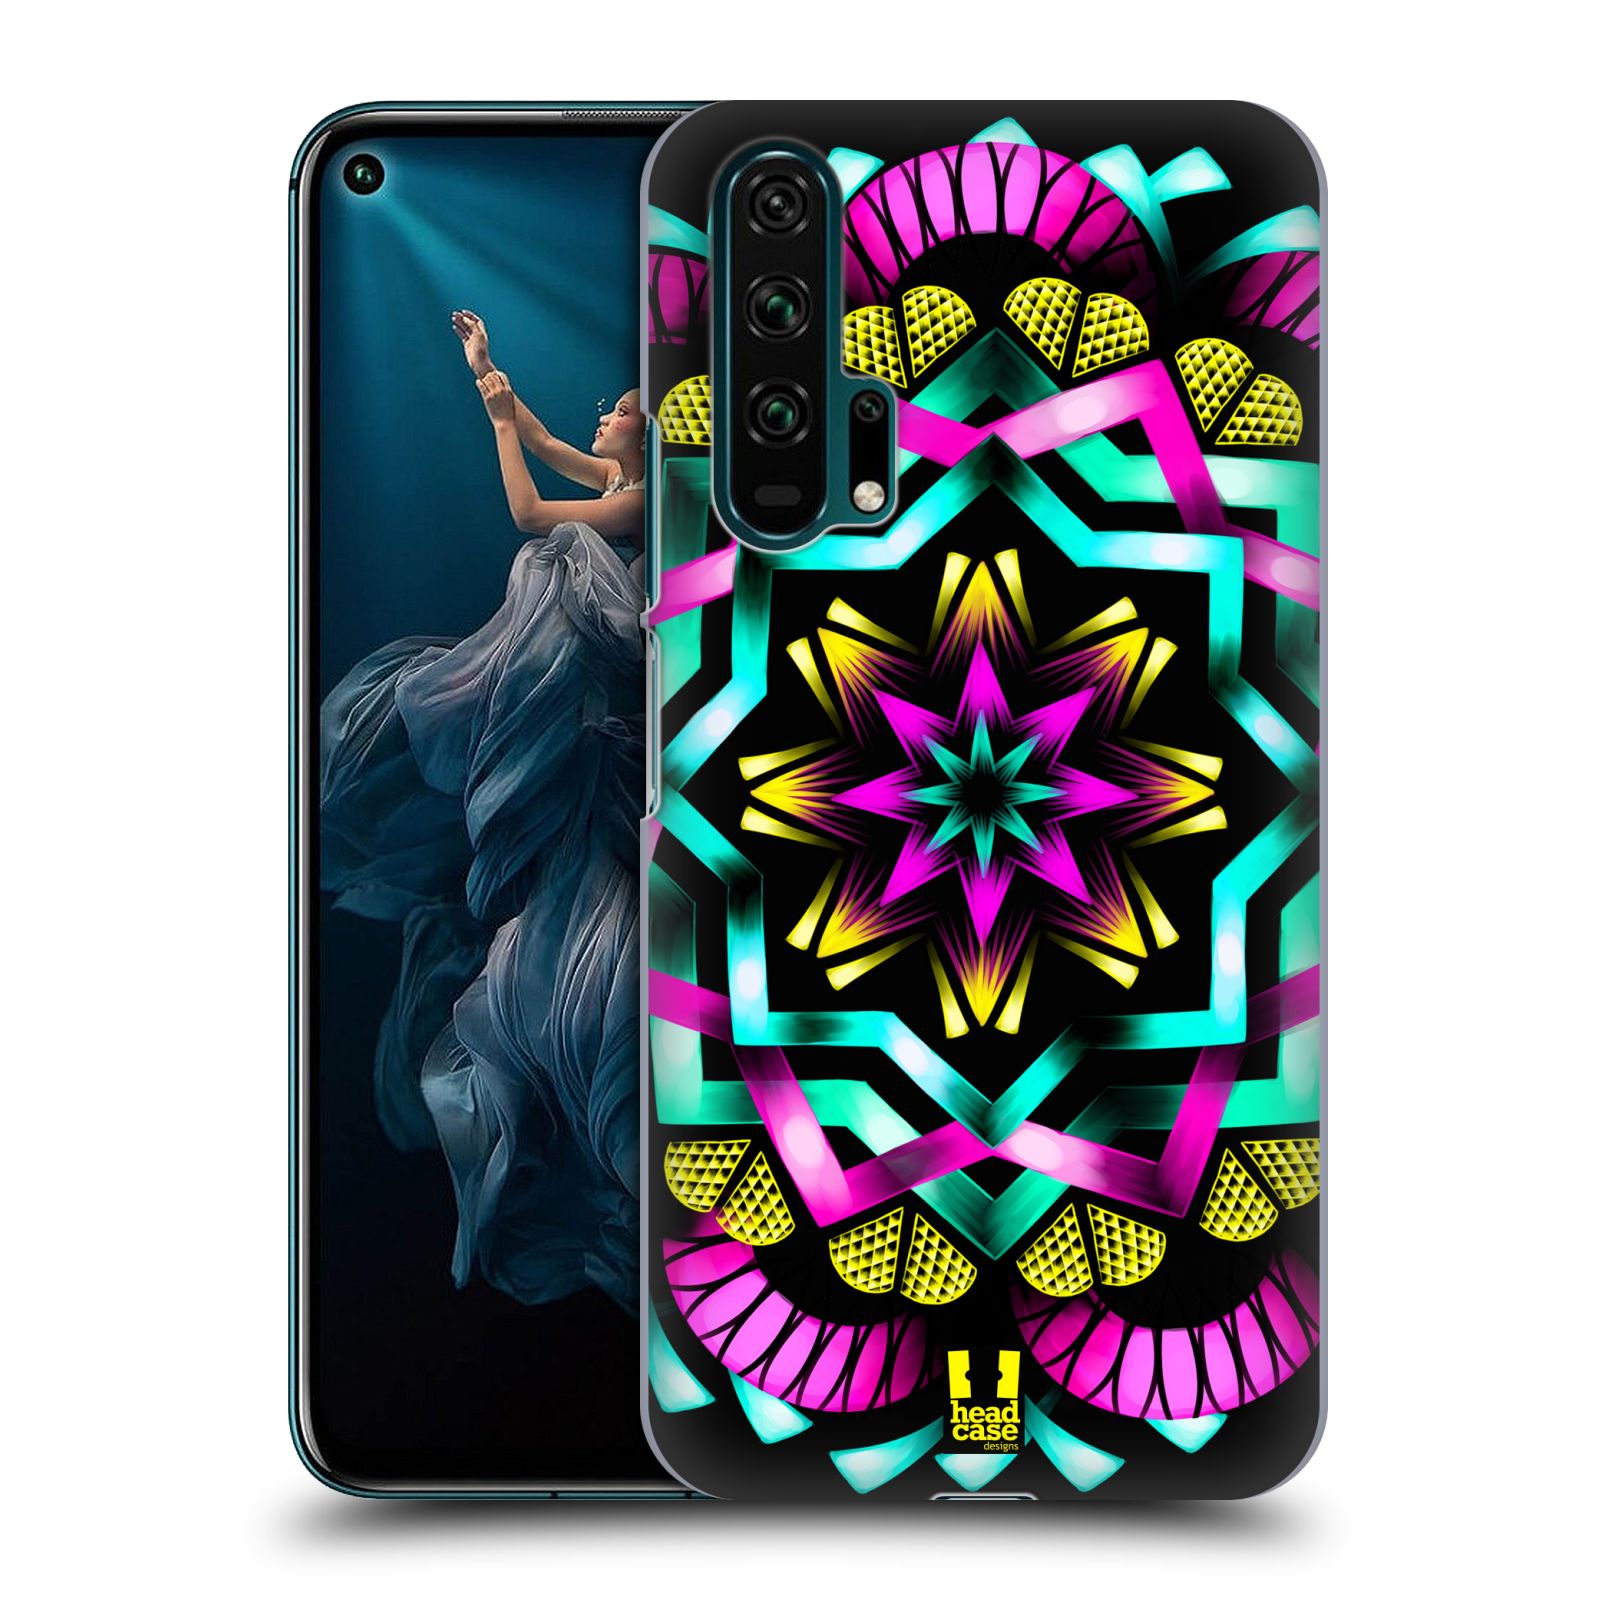 Pouzdro na mobil Honor 20 PRO - HEAD CASE - vzor Indie Mandala kaleidoskop barevný vzor SLUNCE